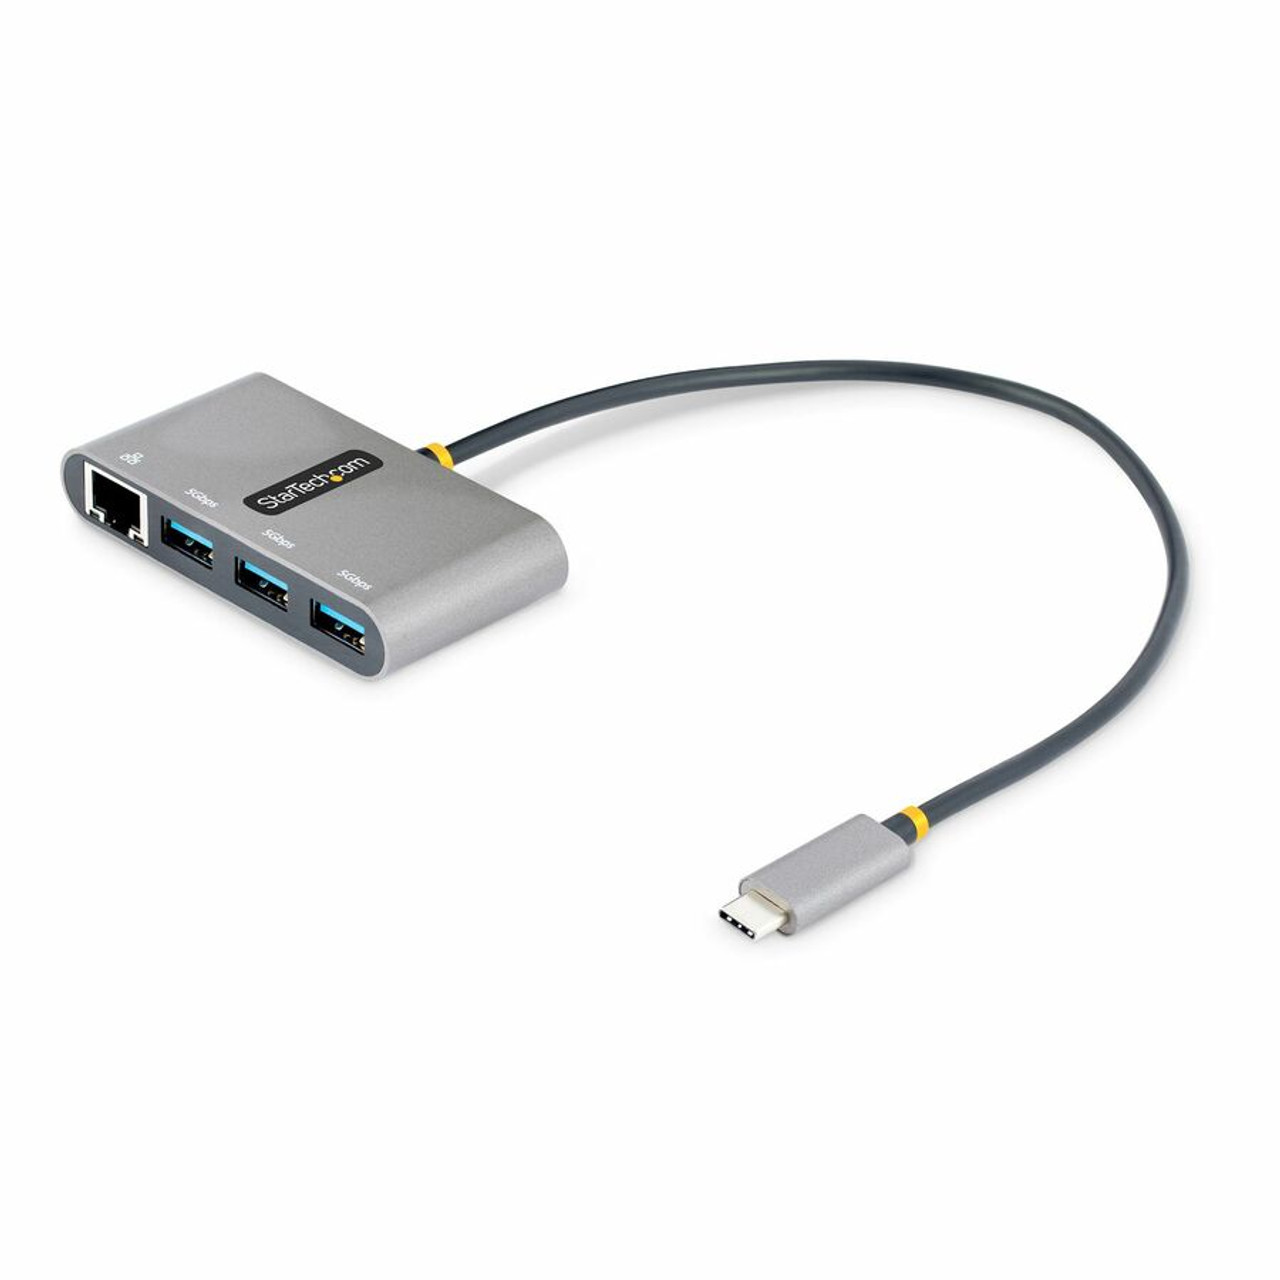 HUB USB Avec Port Ethernet 1000Mbps, 3 X USB 3.0, Adaptateur USB